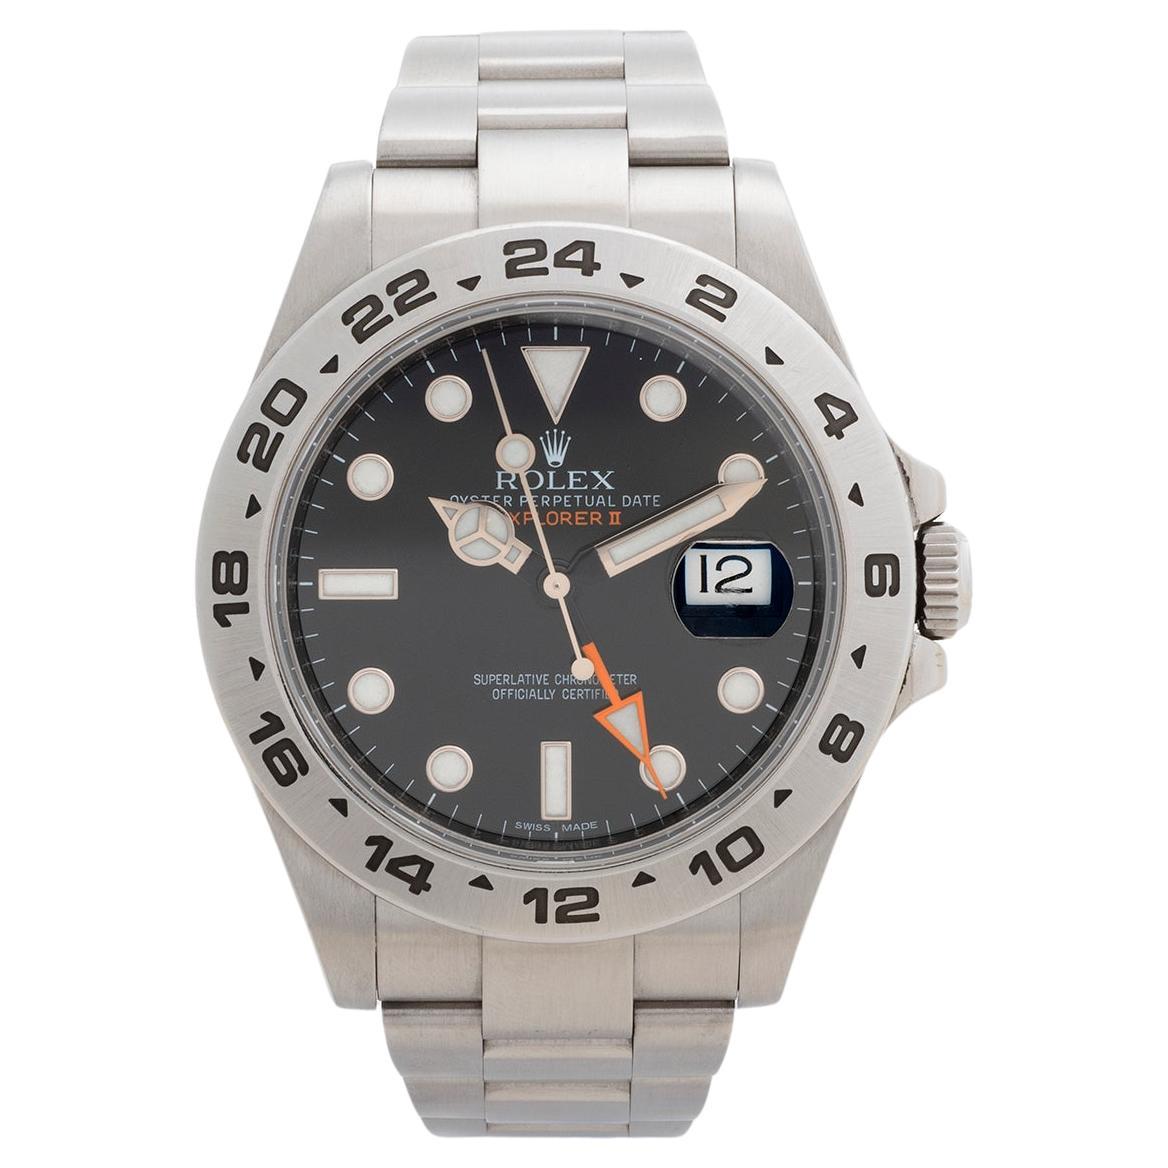 Rolex Explorer II Wristwatch Ref 216570, 42mm Case, Stainless Steel, Year 2011